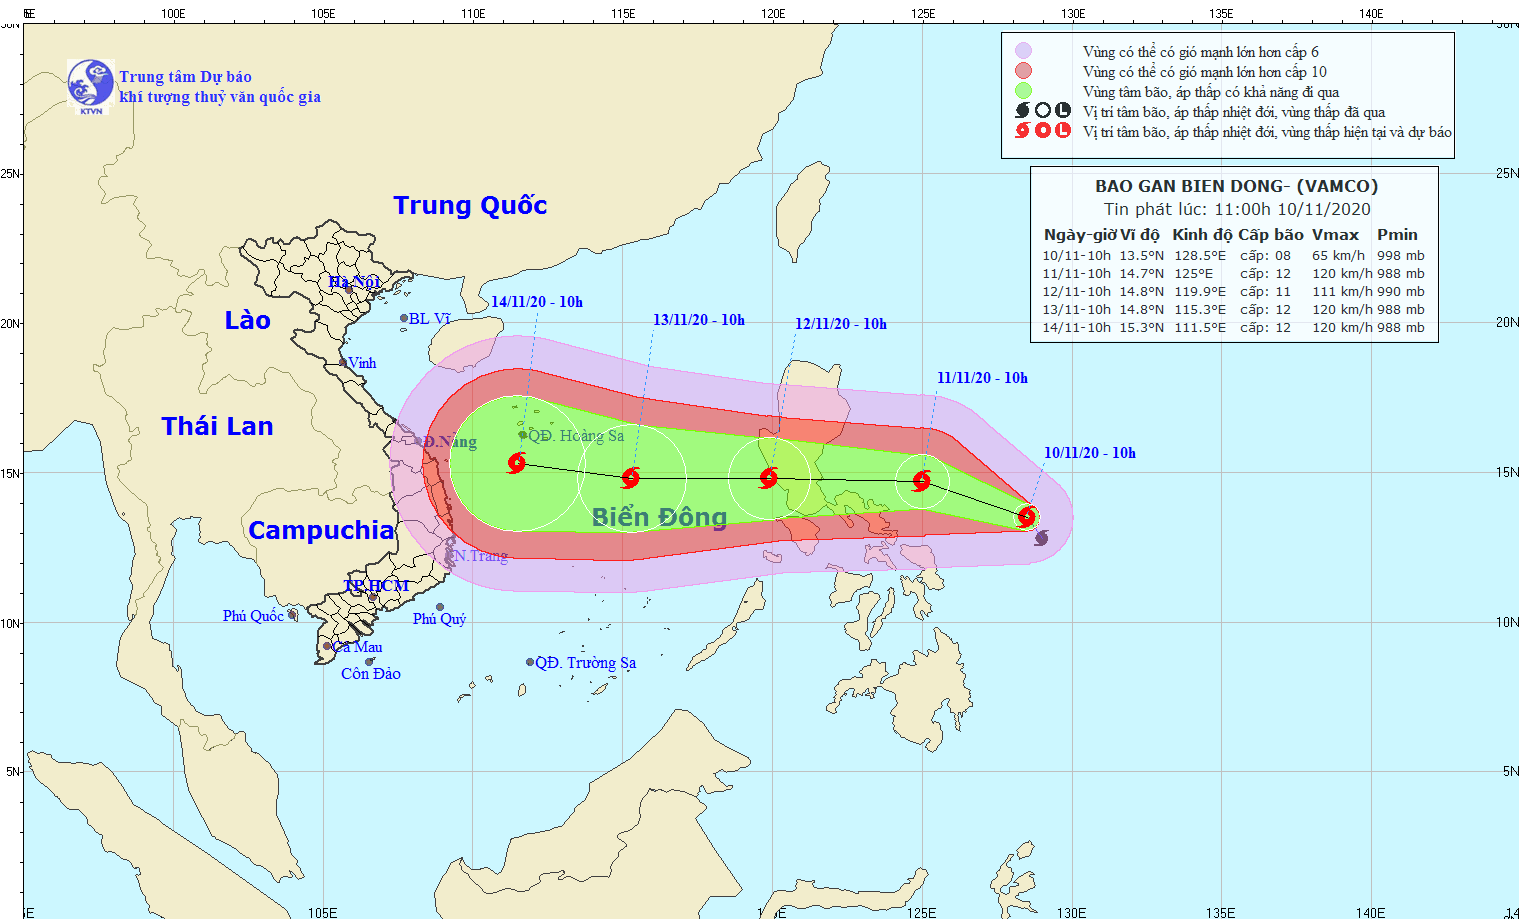  Xuất hiện cơn bão Vamco gần Biển Đông  - Ảnh 1.